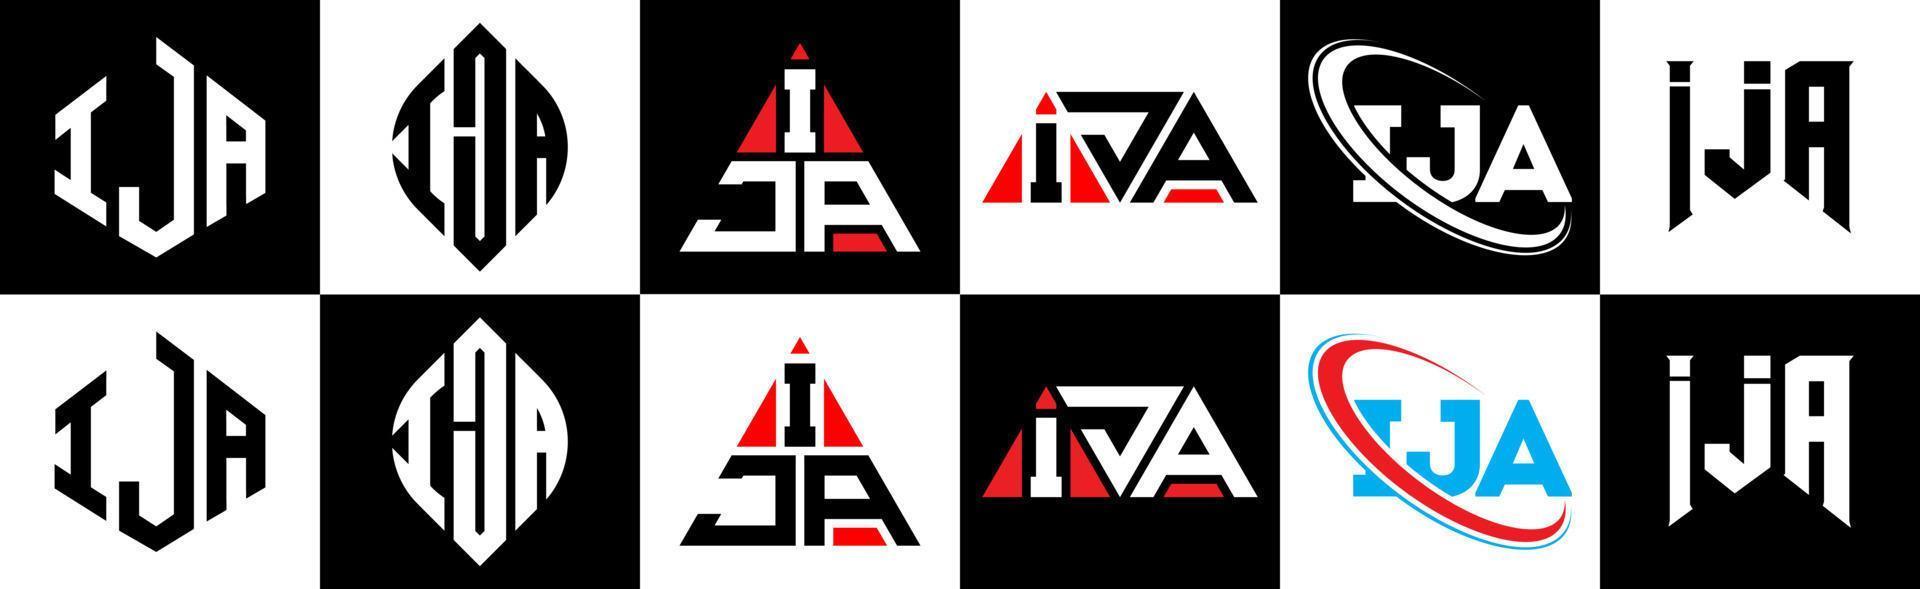 ija lettera logo design nel sei stile. ija poligono, cerchio, triangolo, esagono, piatto e semplice stile con nero e bianca colore variazione lettera logo impostato nel uno tavola da disegno. ija minimalista e classico logo vettore